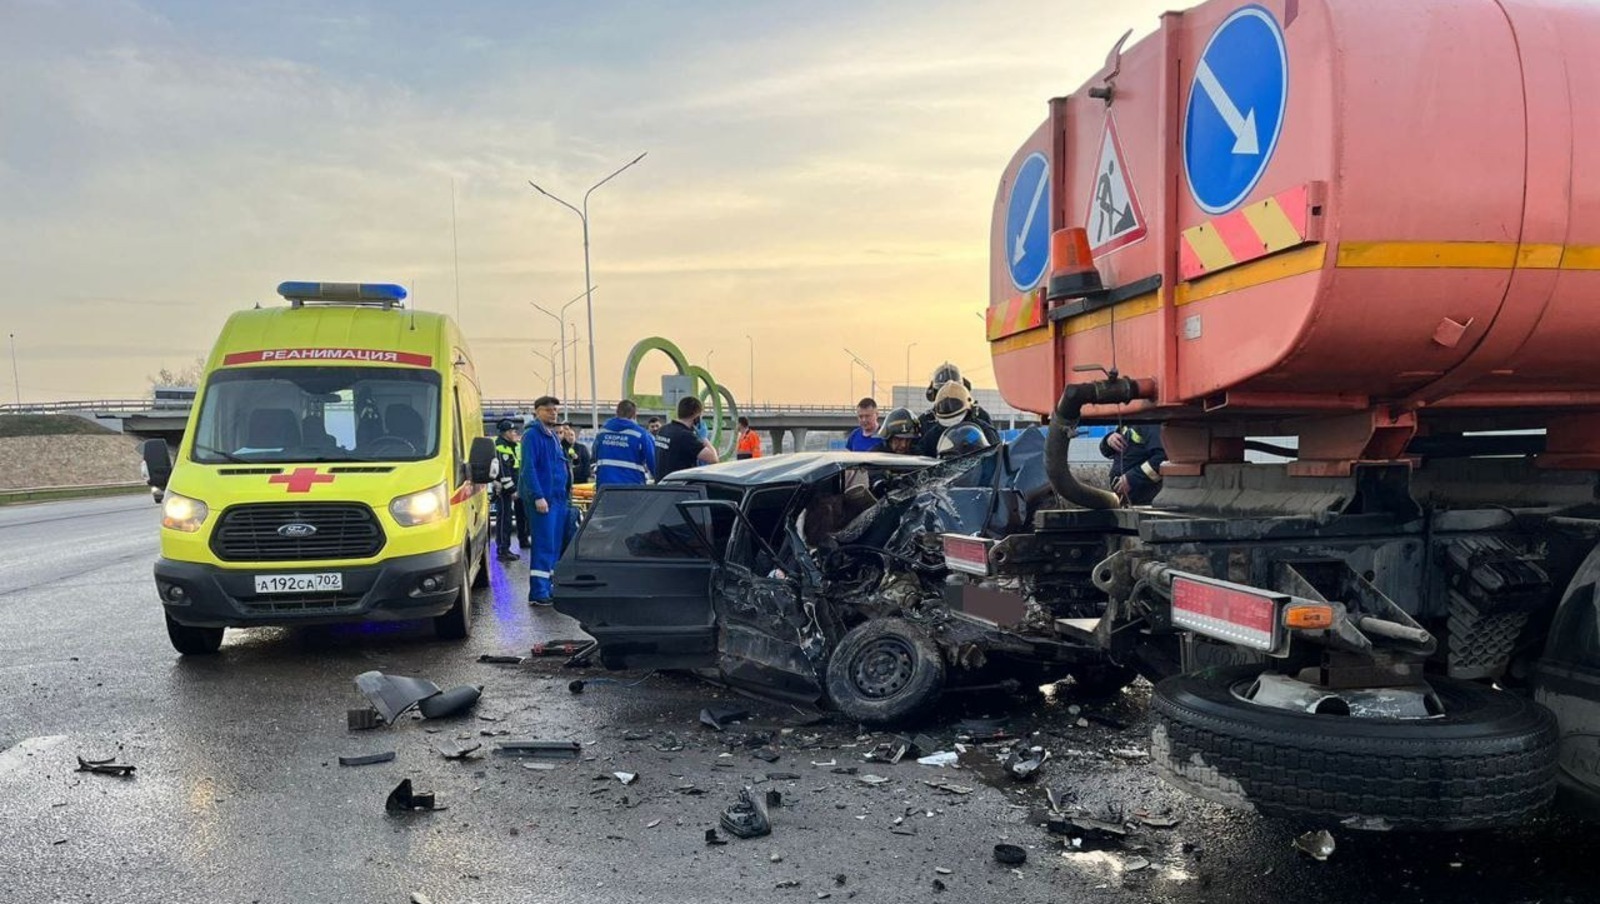 Стал известен хозяин машины, в которой погибли 5 человек в результате ДТП в Башкирии